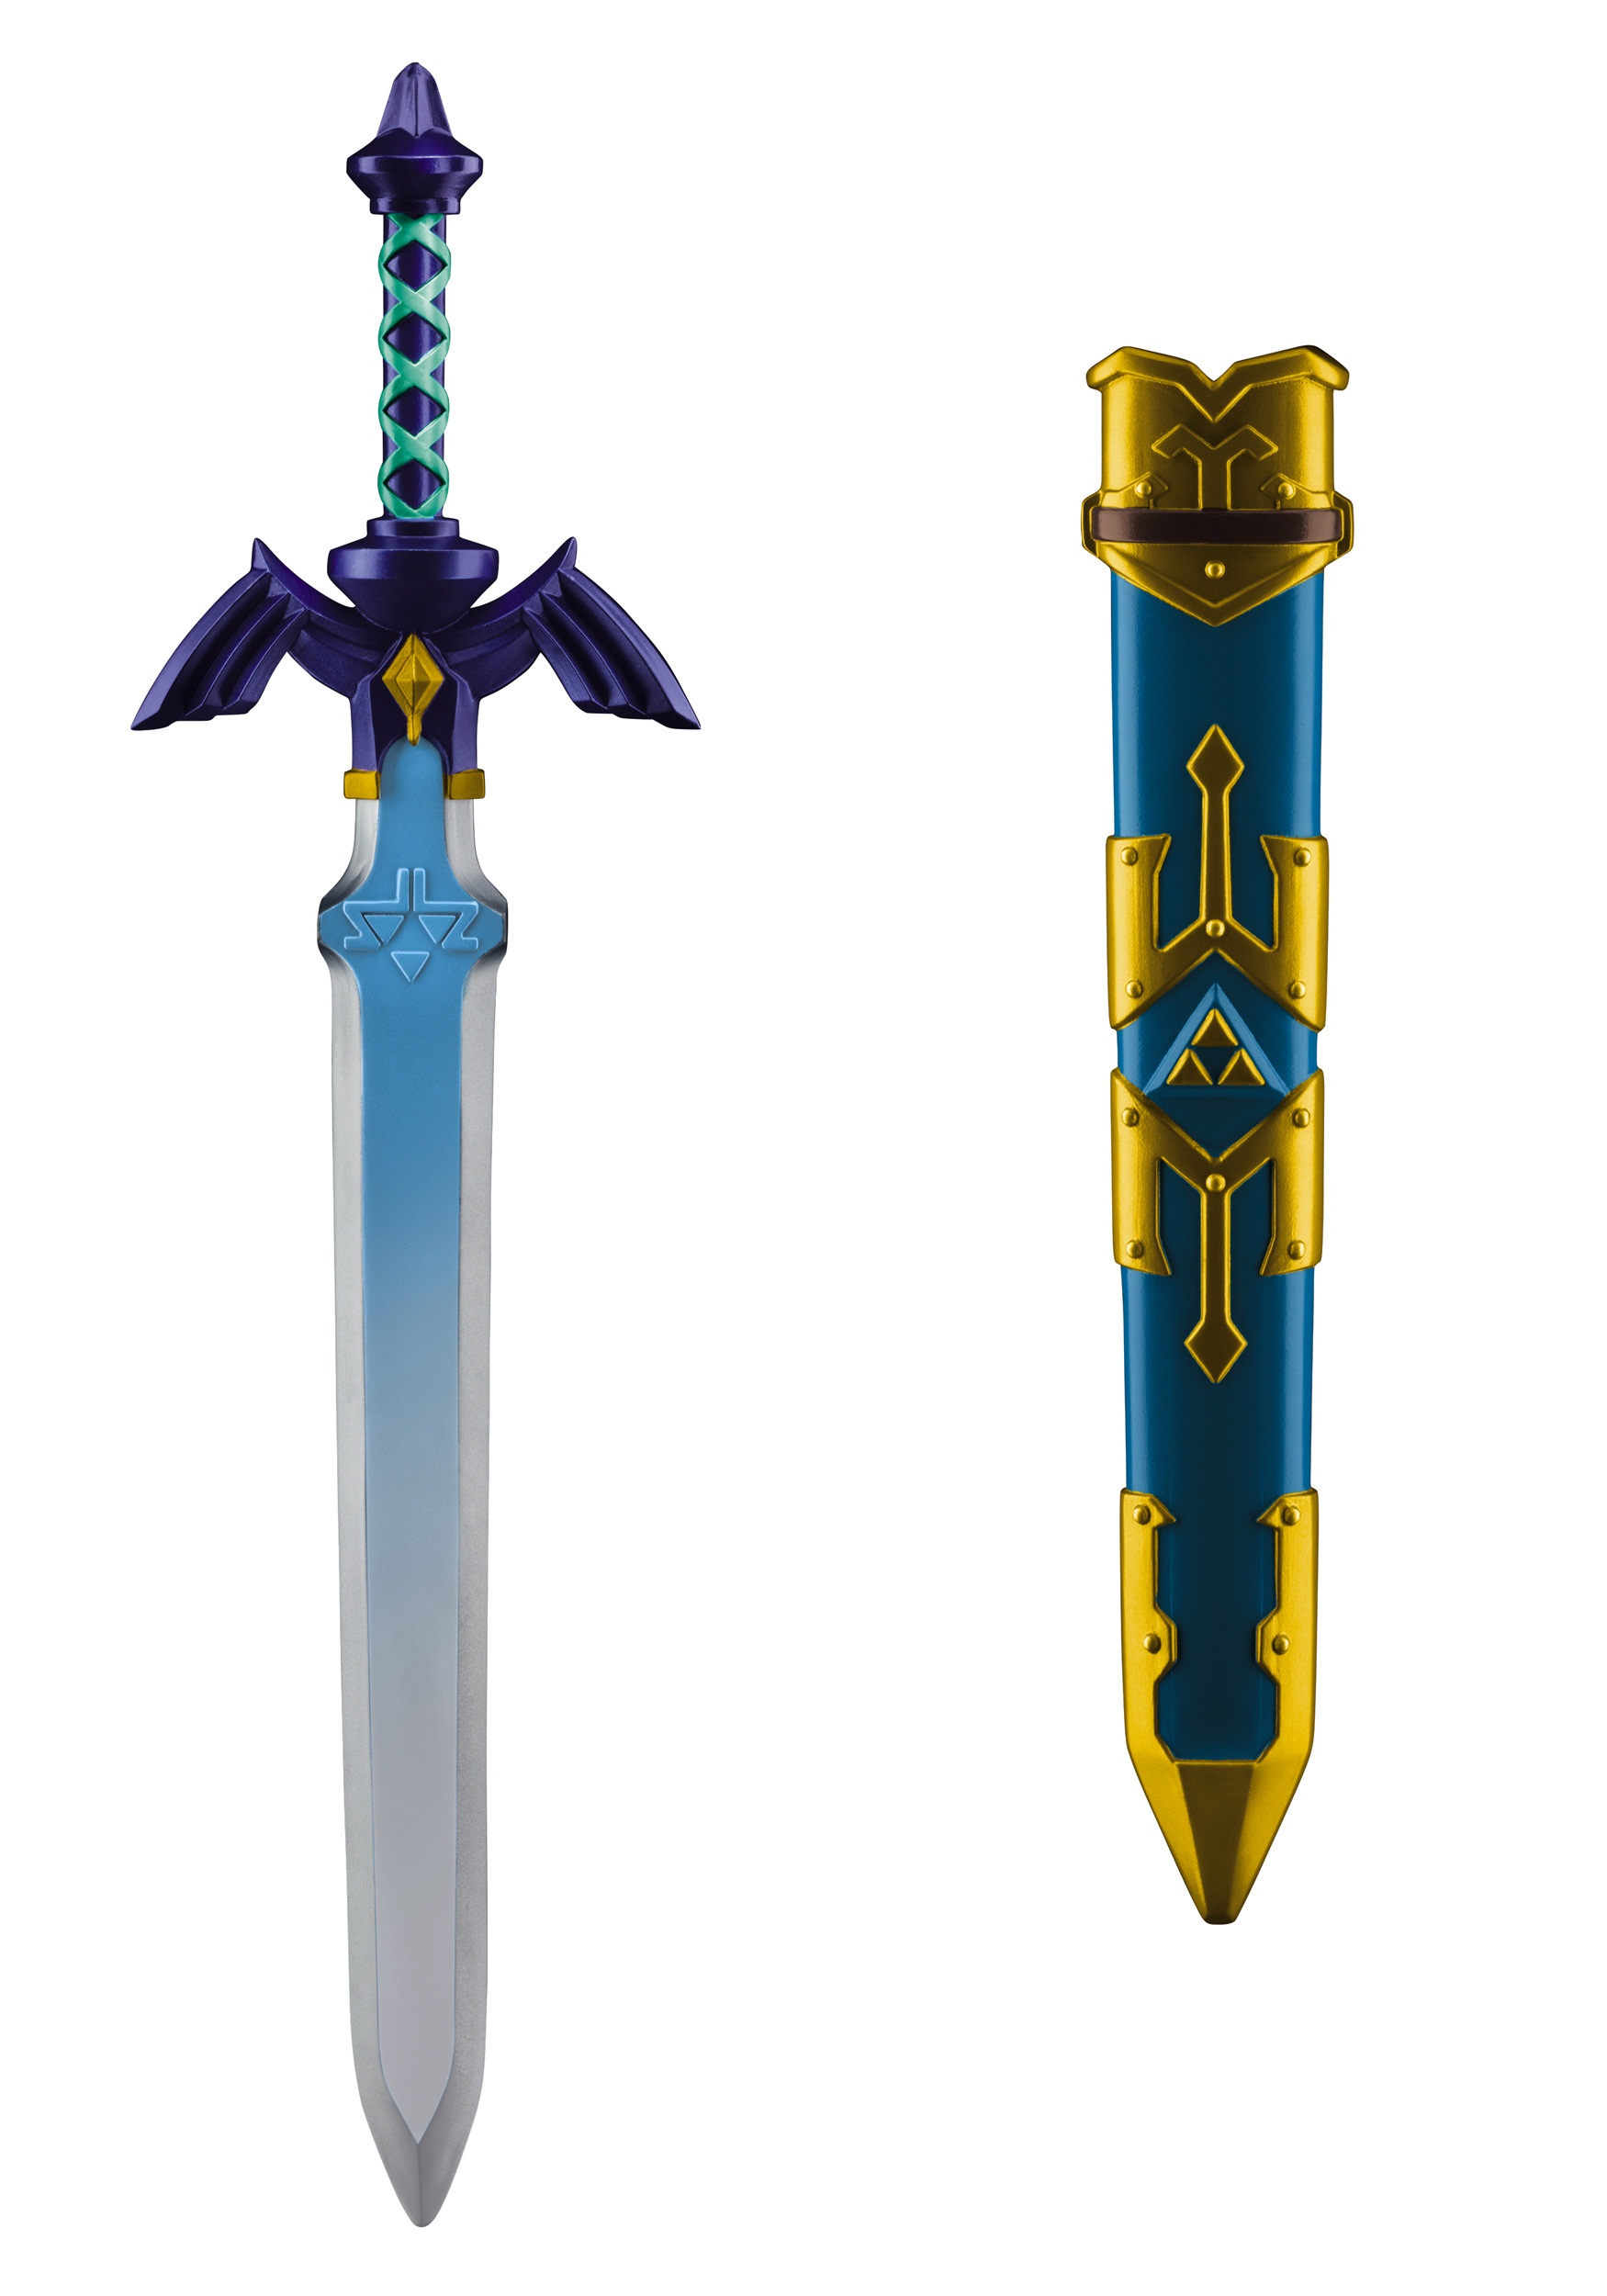 legend-of-zelda-link-sword